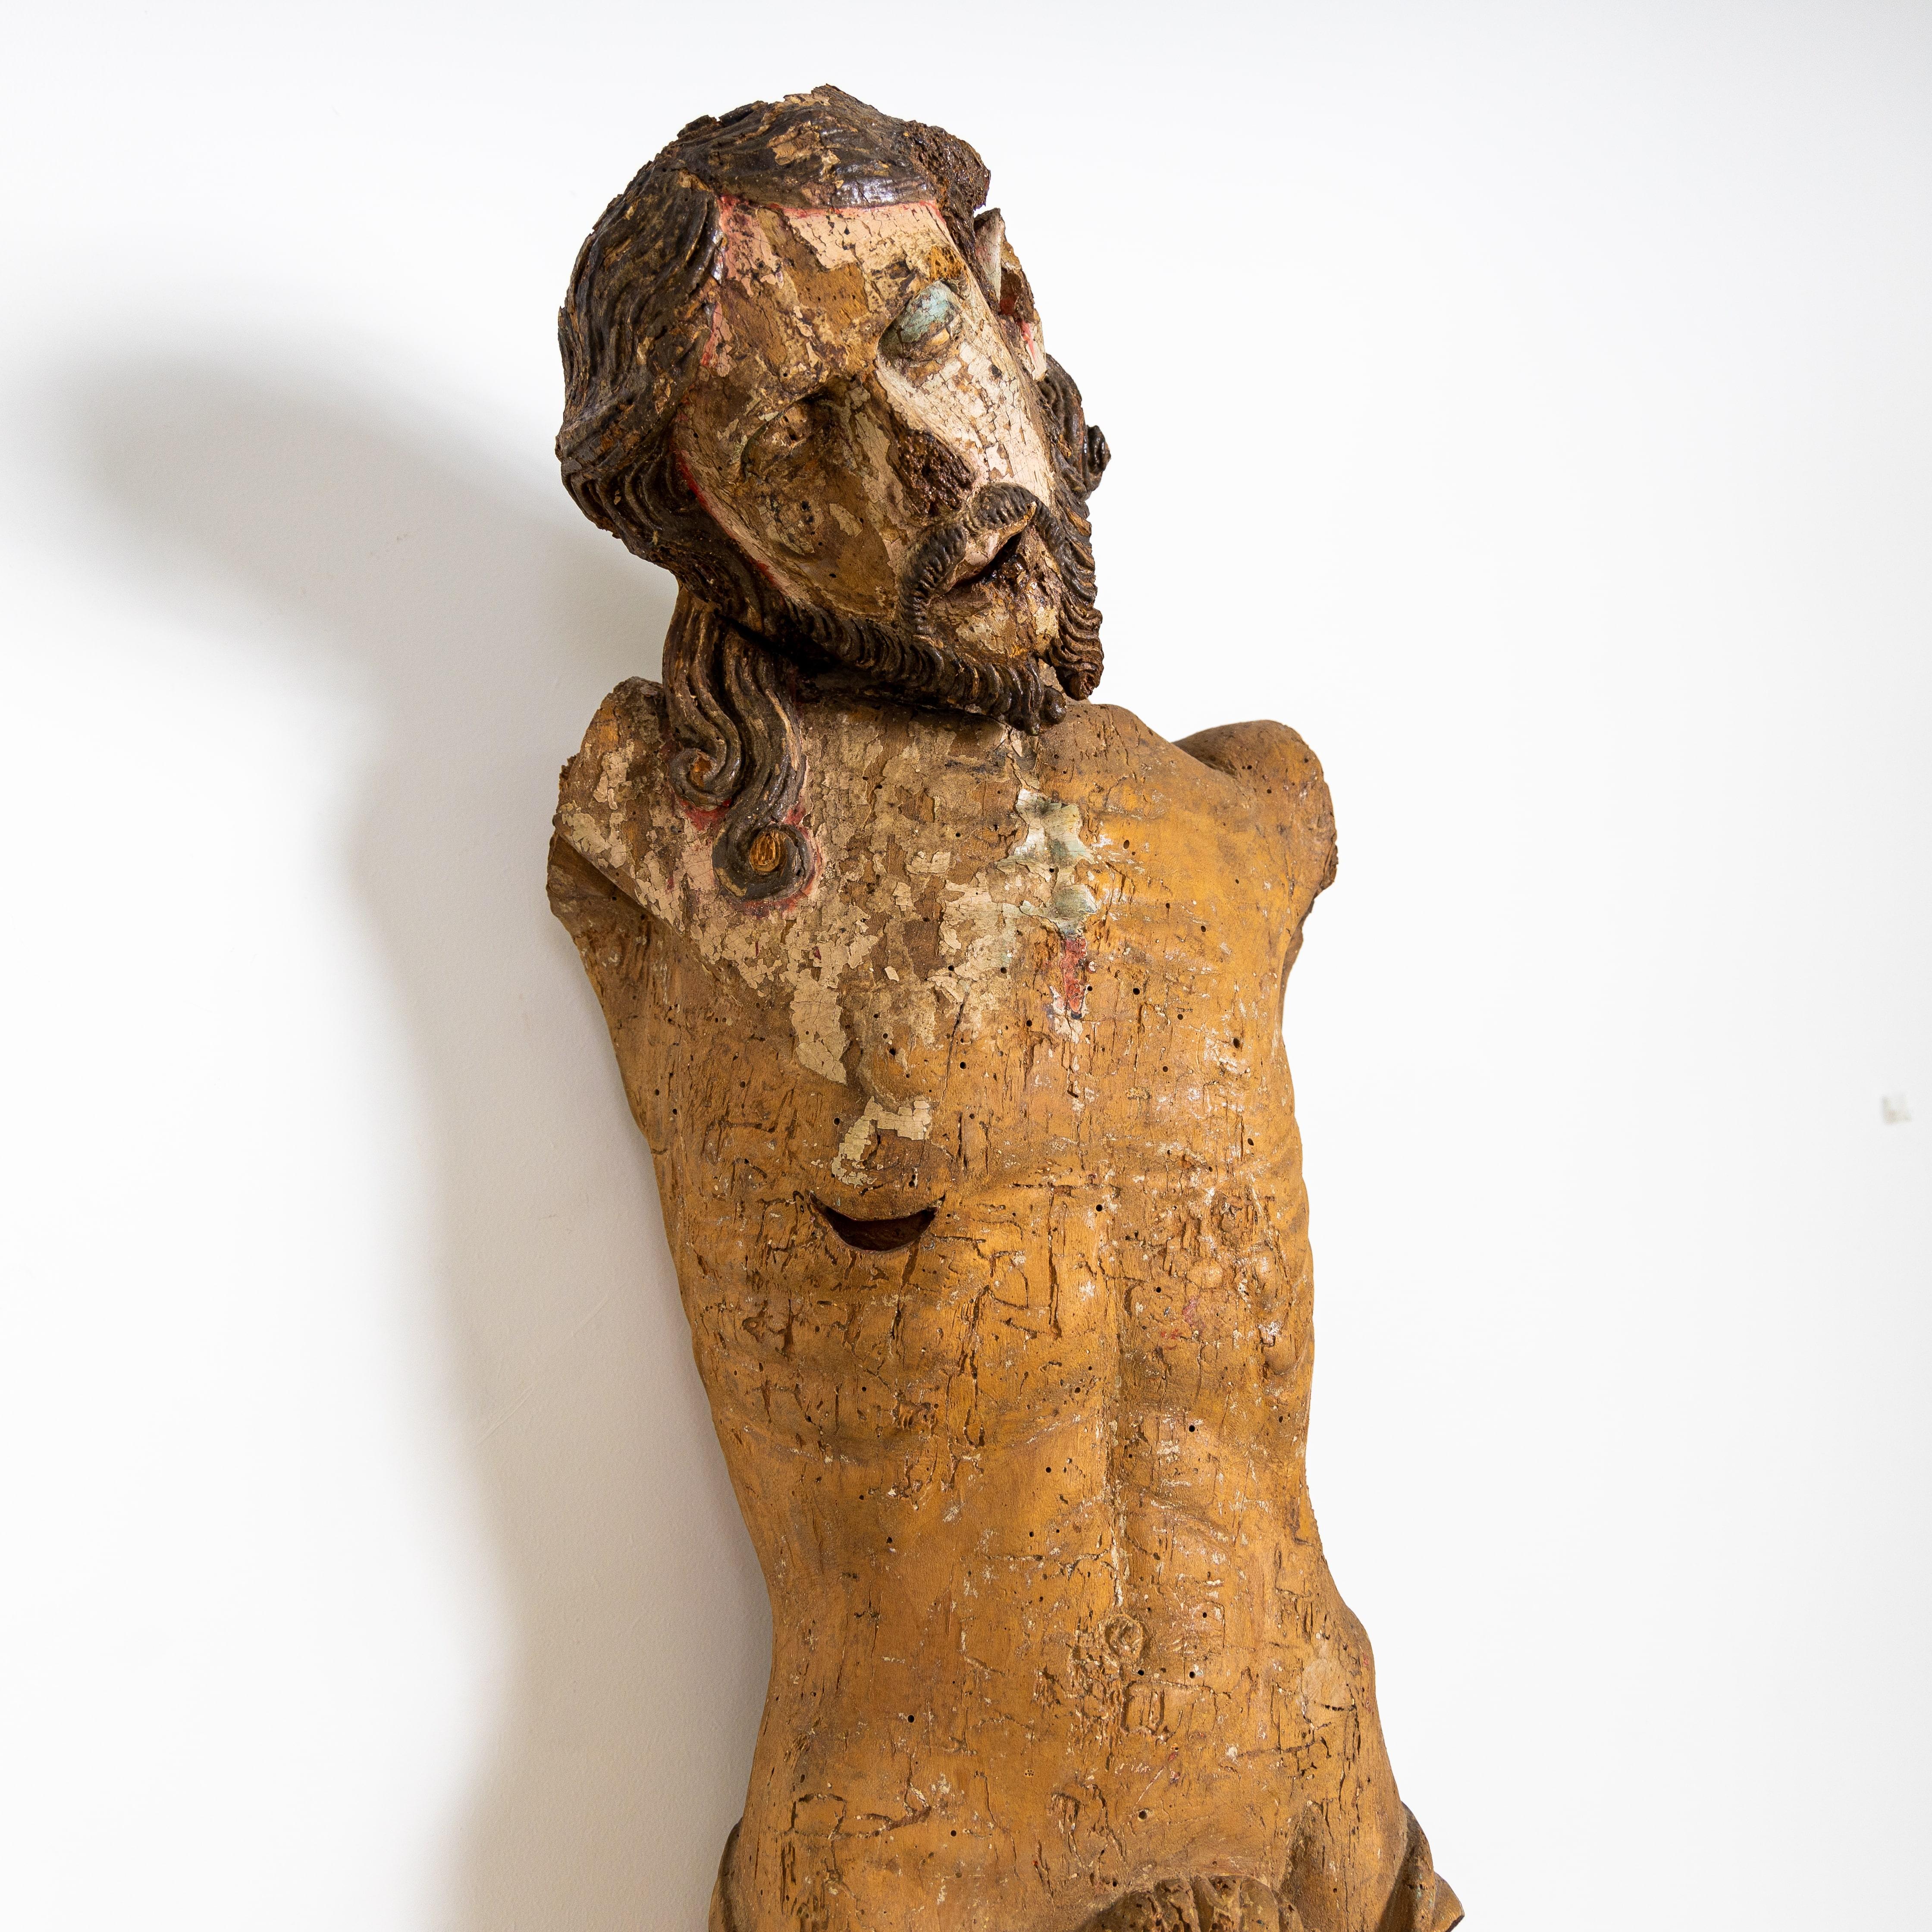 Fast lebensgroße Christus-Skulptur aus dem 17. Jahrhundert. Holz geschnitzt und gefasst.